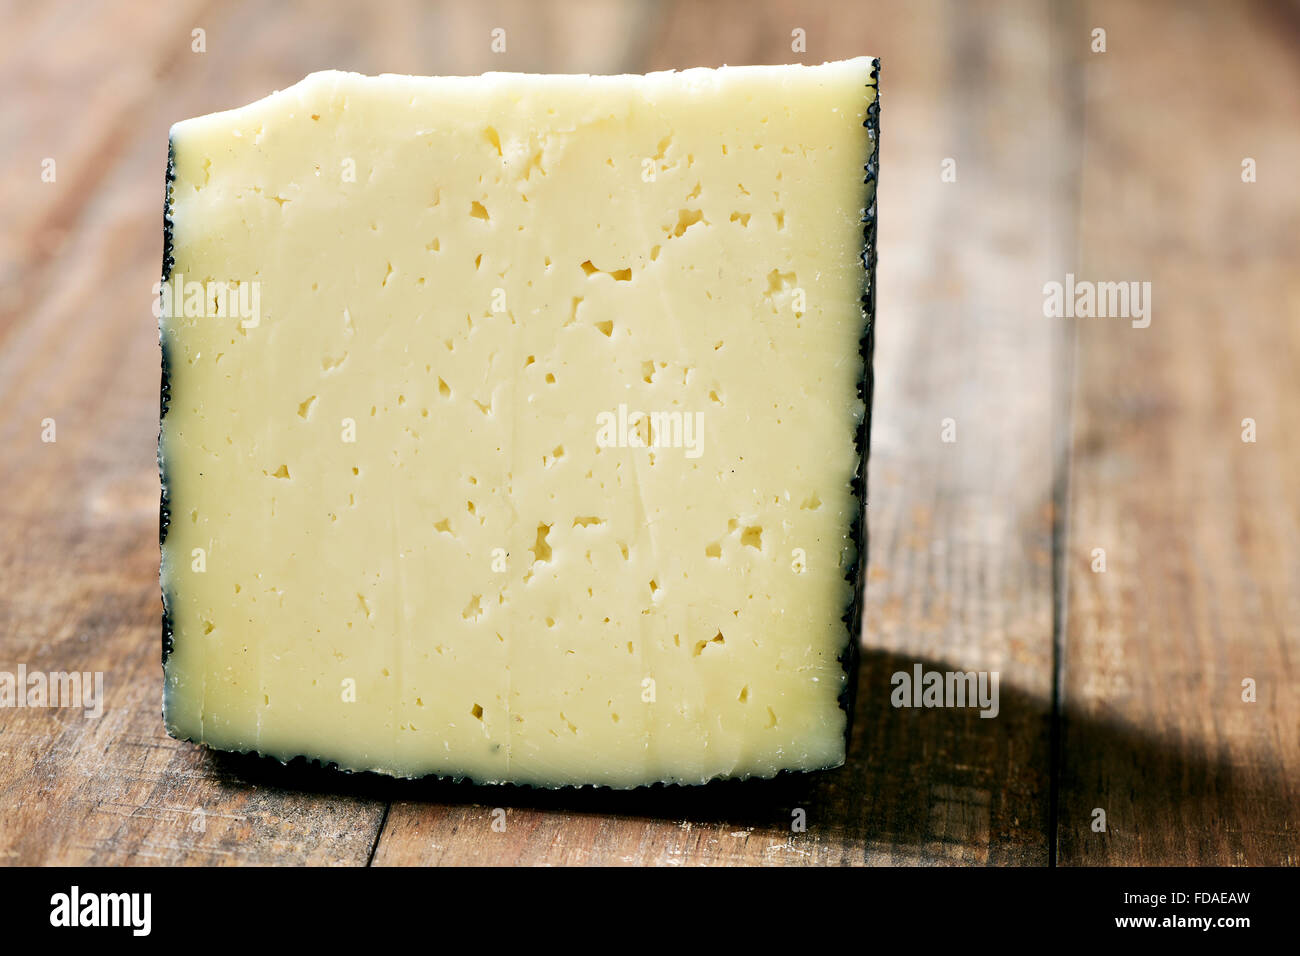 Libre d'un morceau de fromage manchego d'Espagne sur une table en bois rustique Banque D'Images